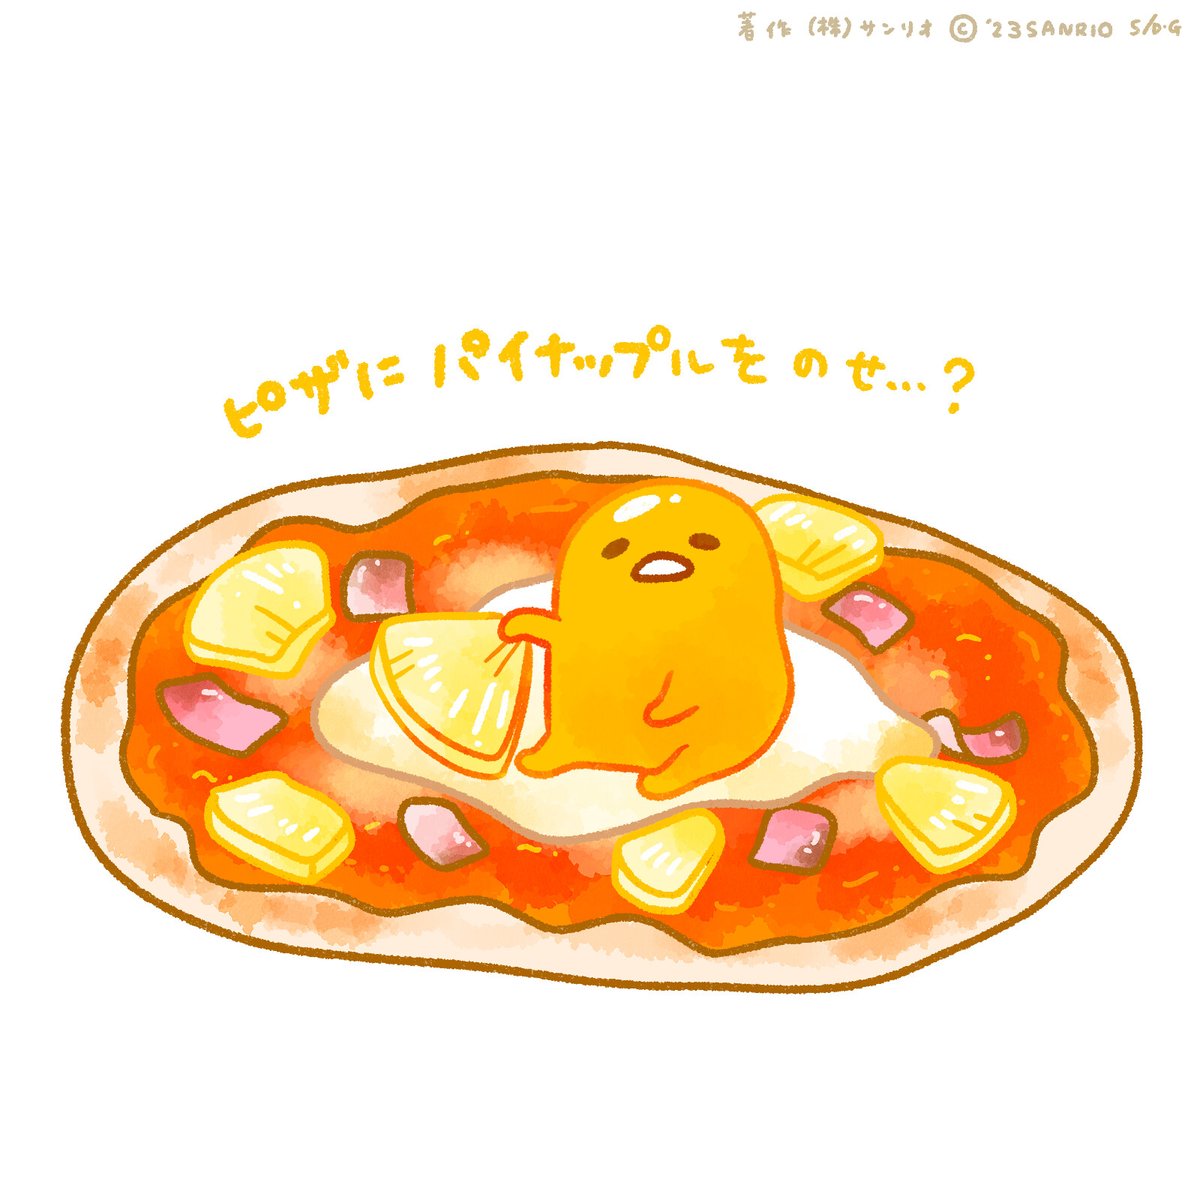 「ピザにパイナップルを乗せ…? #る #ない」|ぐでたま【公式】のイラスト